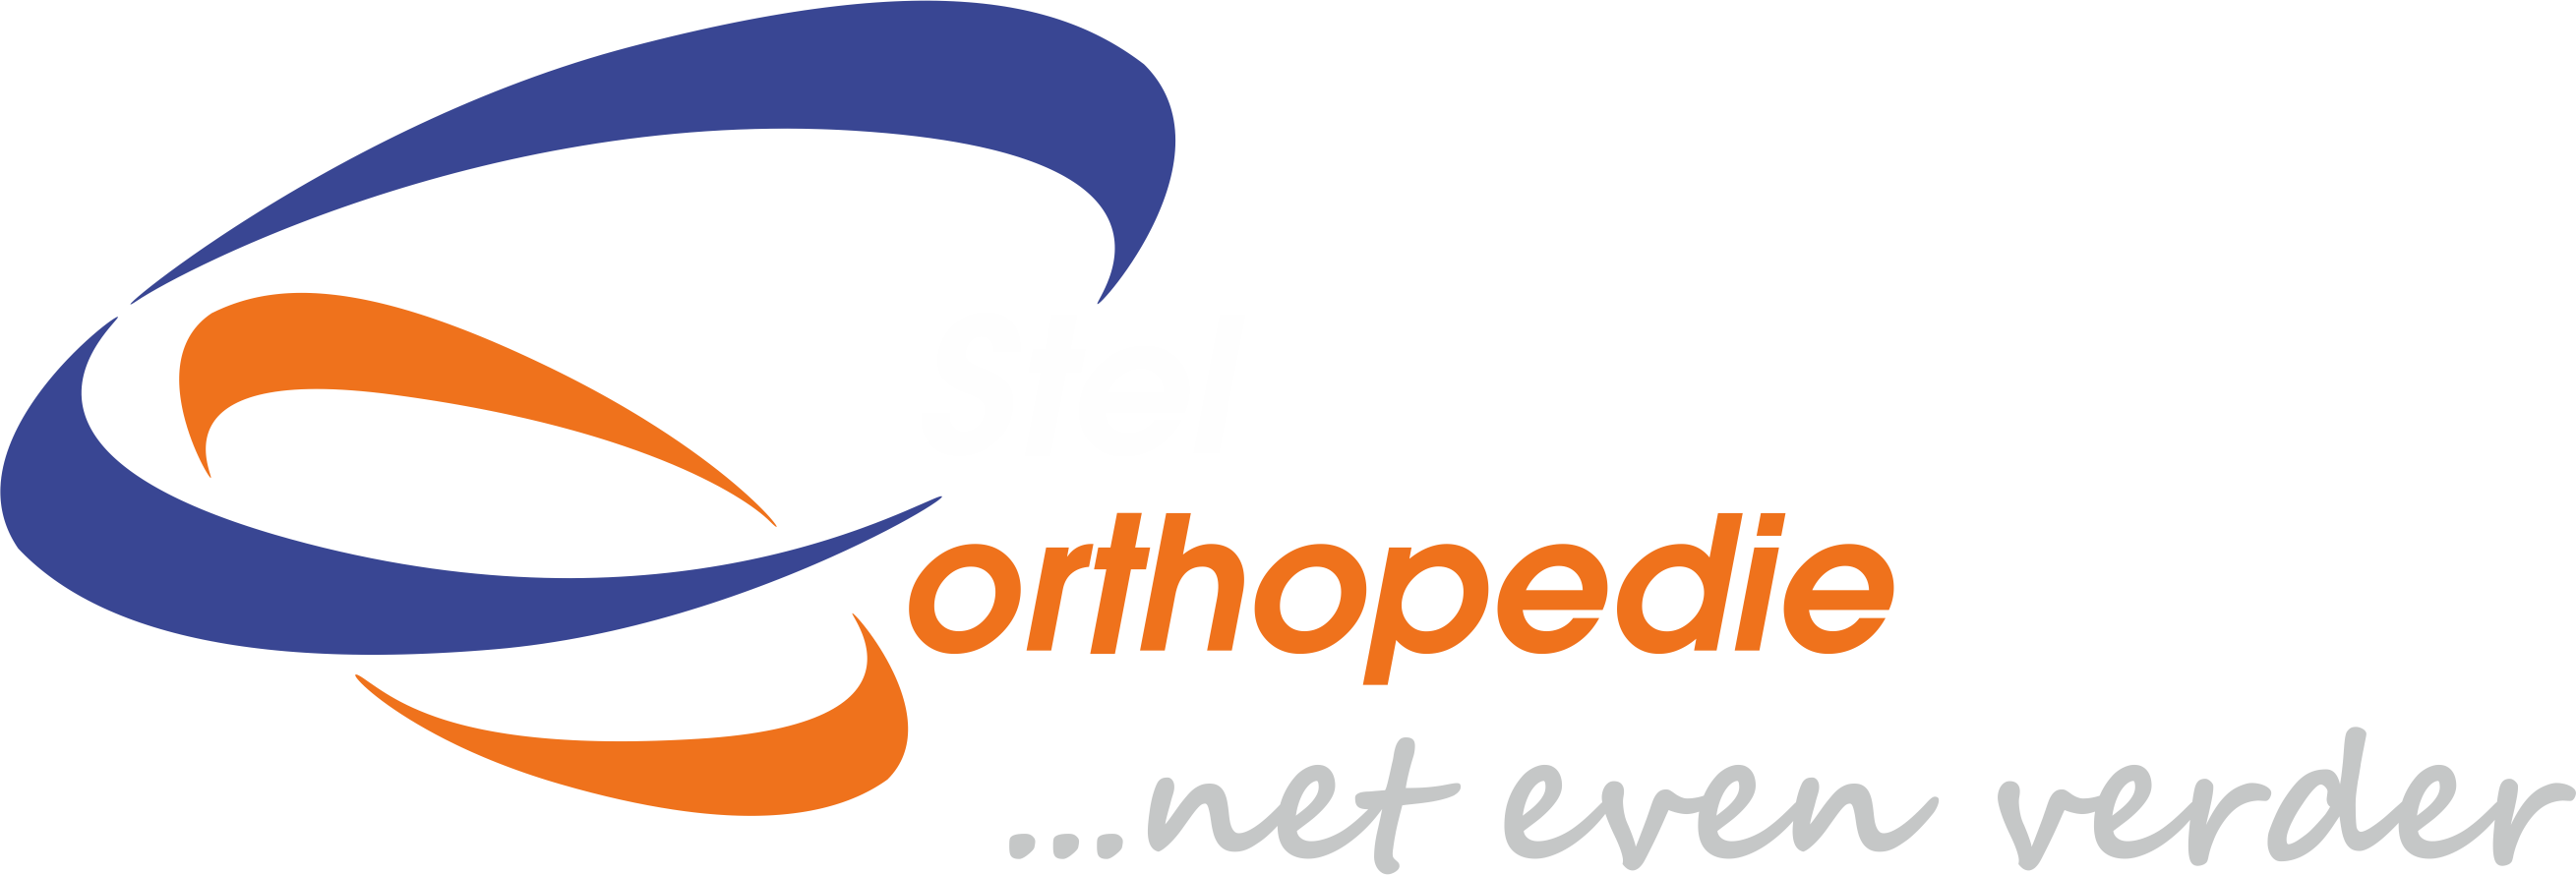 Stel Orthopedie logo